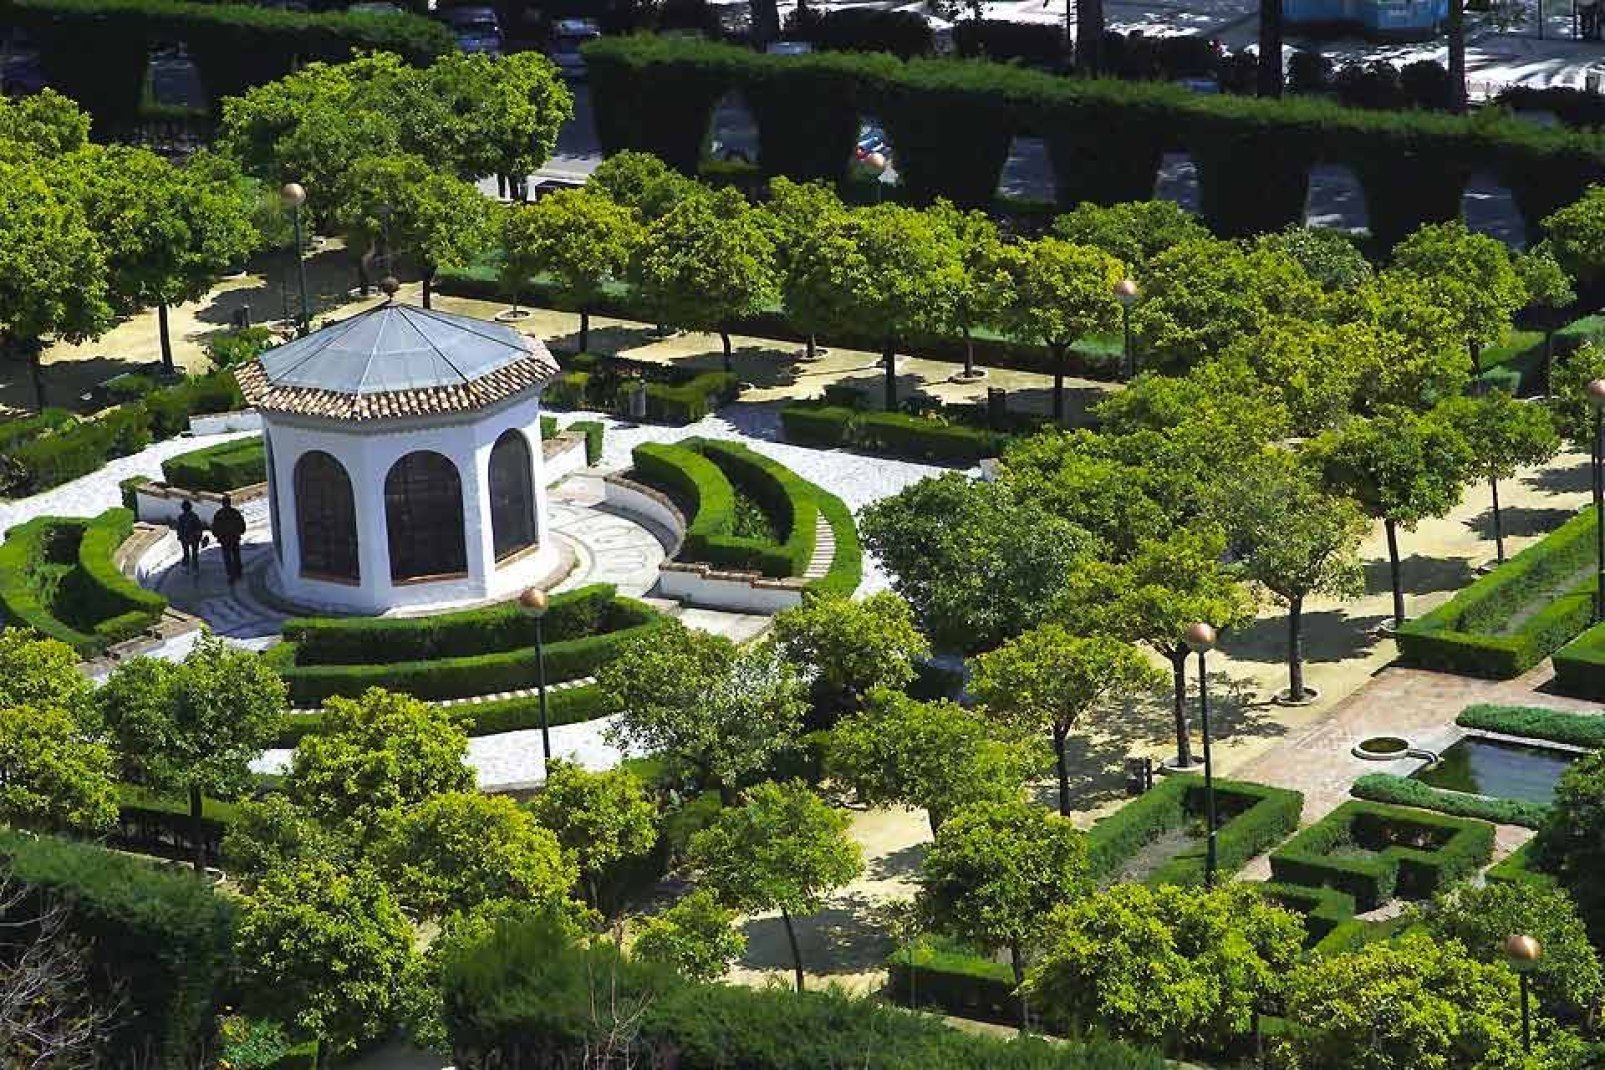 Ce jardin tropical est le plus beau et le plus important d'Espagne. Situé à seulement 5km de la ville de Malaga, il offre aux touristes une visite inoubliable.